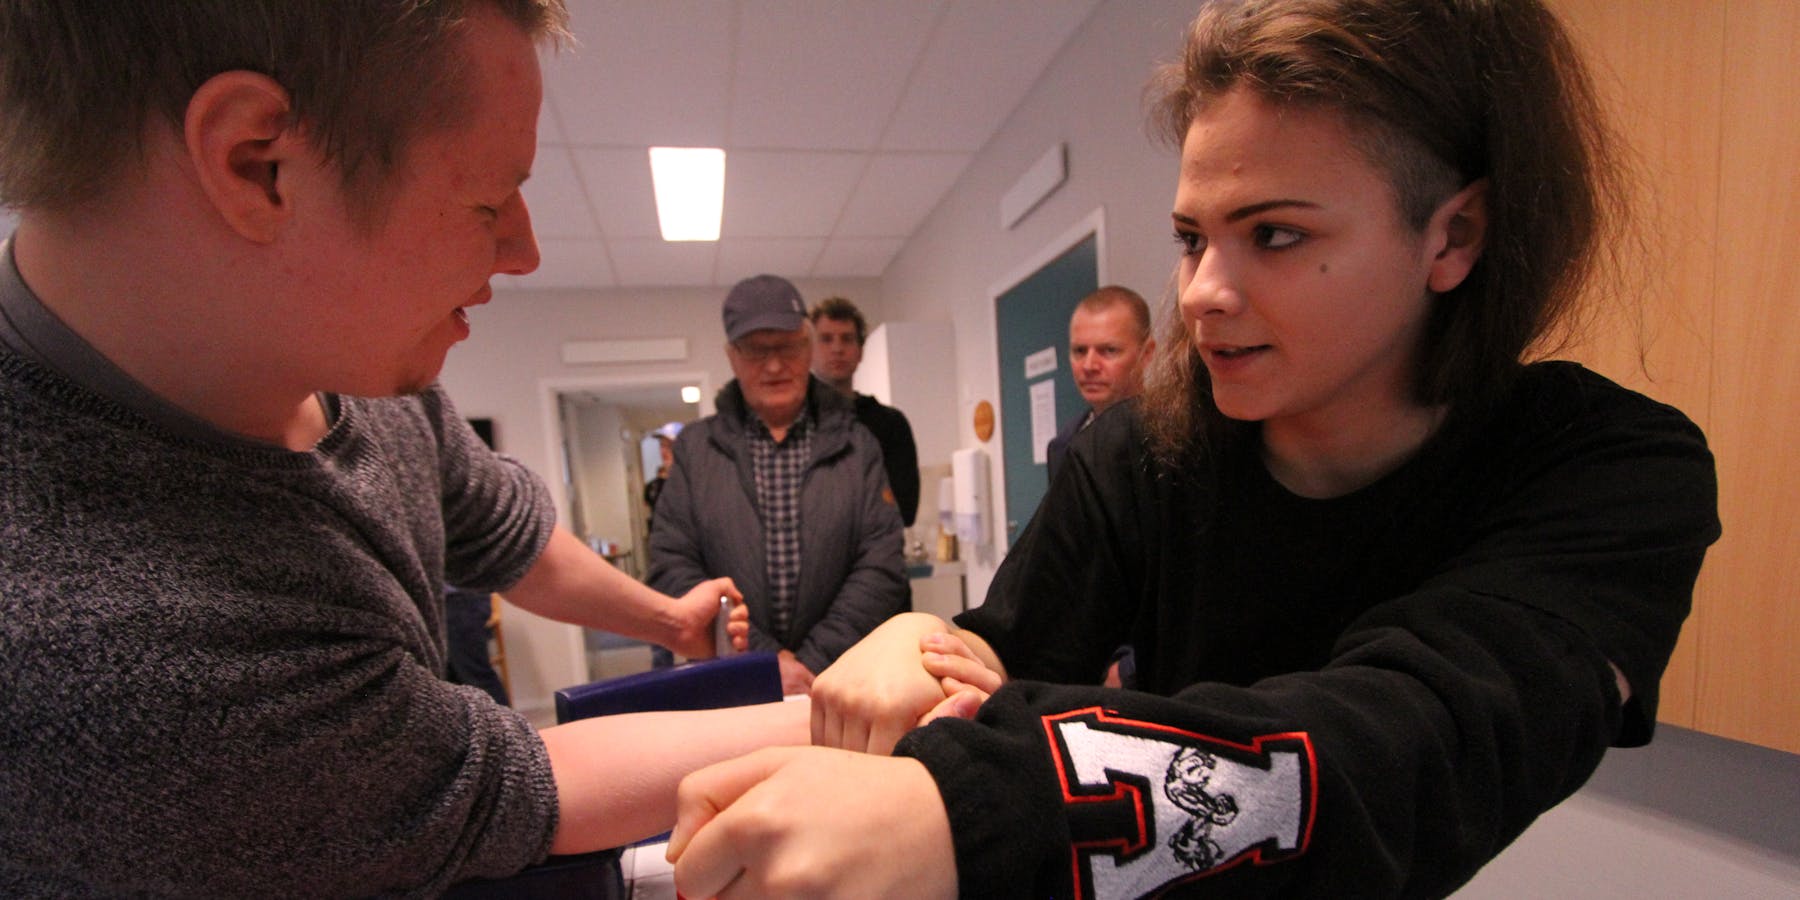 Adelina Busthian (16) er sterk i klypa og fatta interesse for handbak. No er ho i gang med ein ny klubb i Vindafjord. Her i armkamp med Simon Hegerland. 

FOTO: Jon Edvardsen